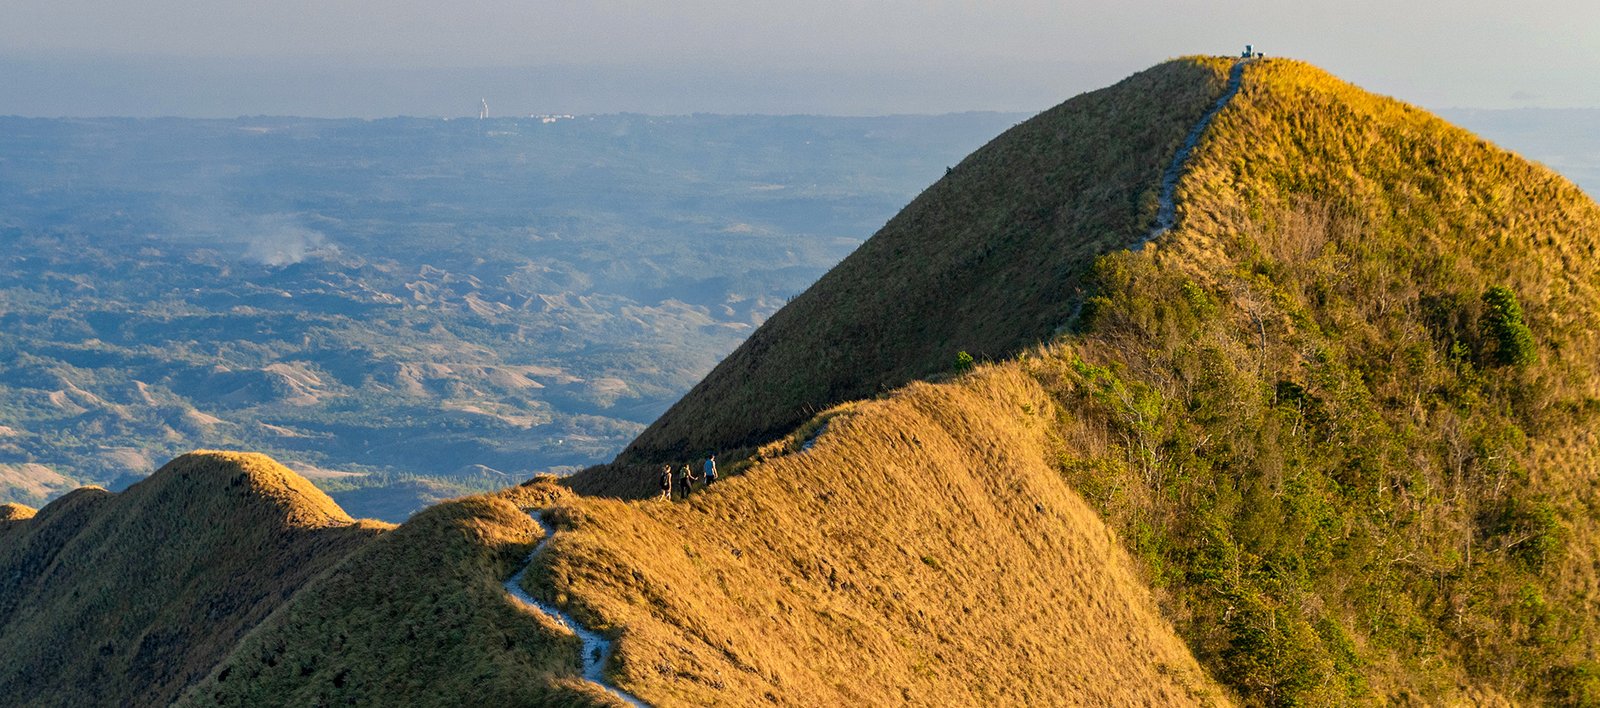 Cerro La Silla, Ruta de la Caldera